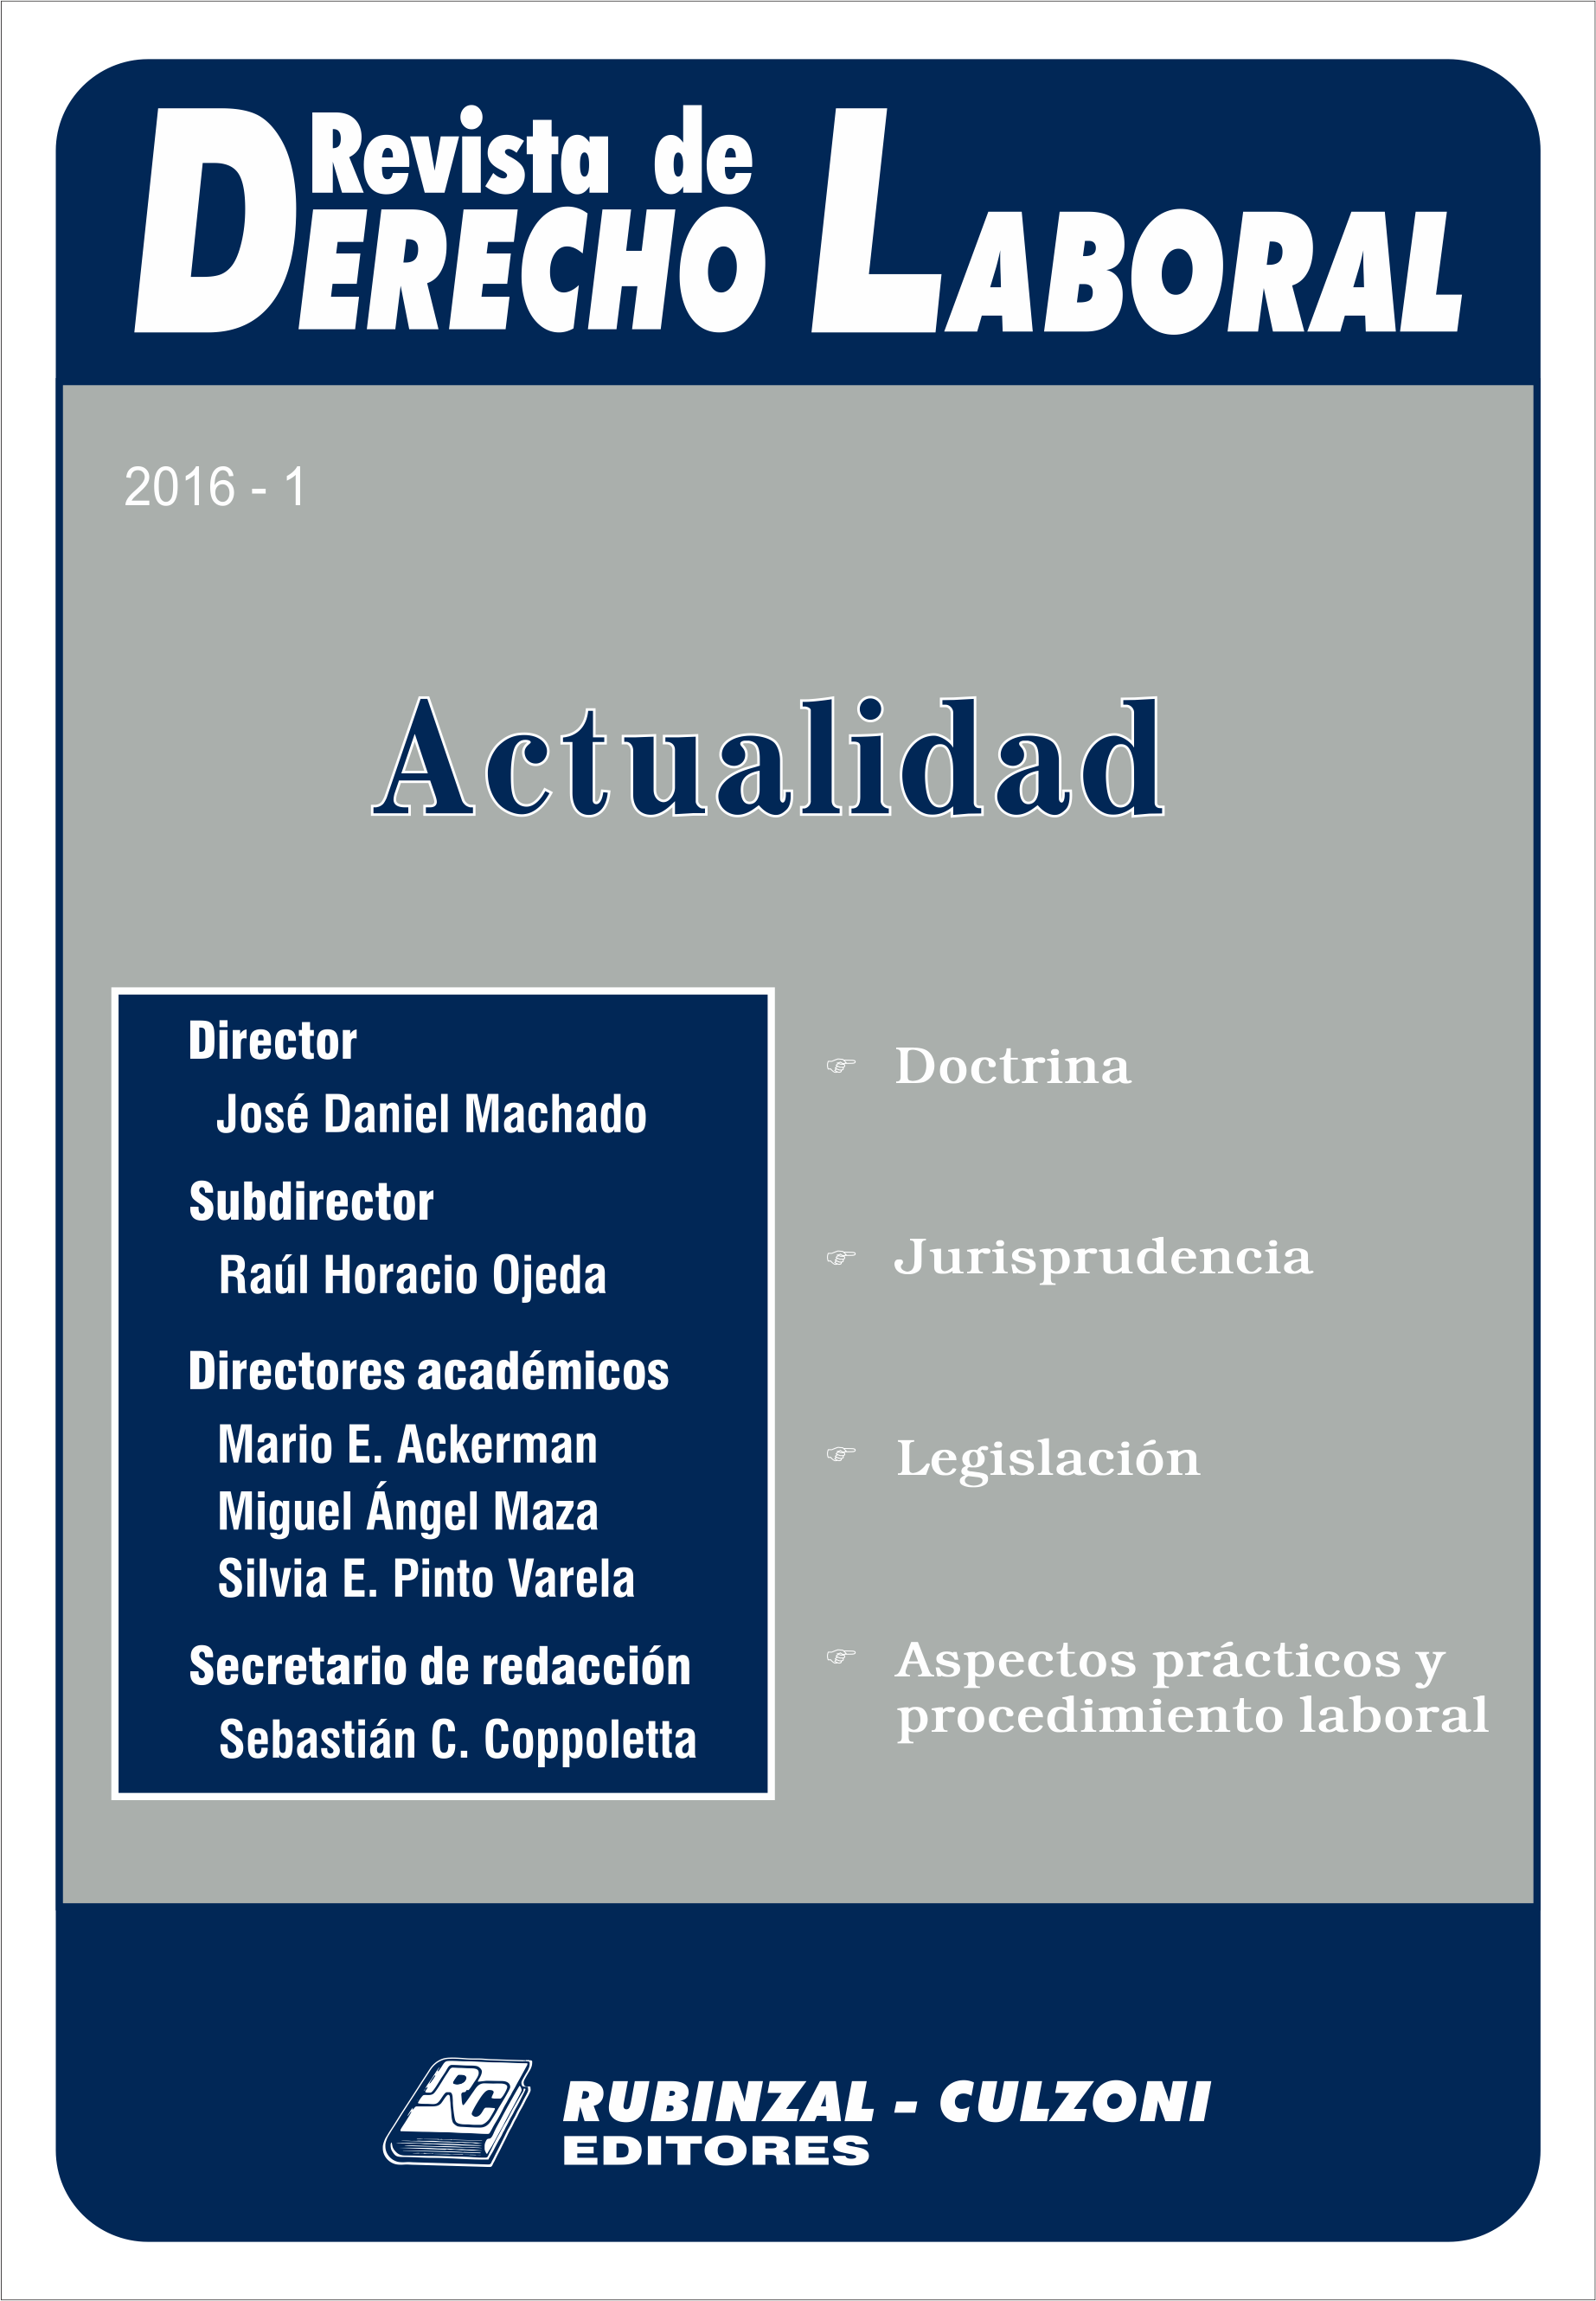 Revista de Derecho Laboral Actualidad - Año 2016 - 1.